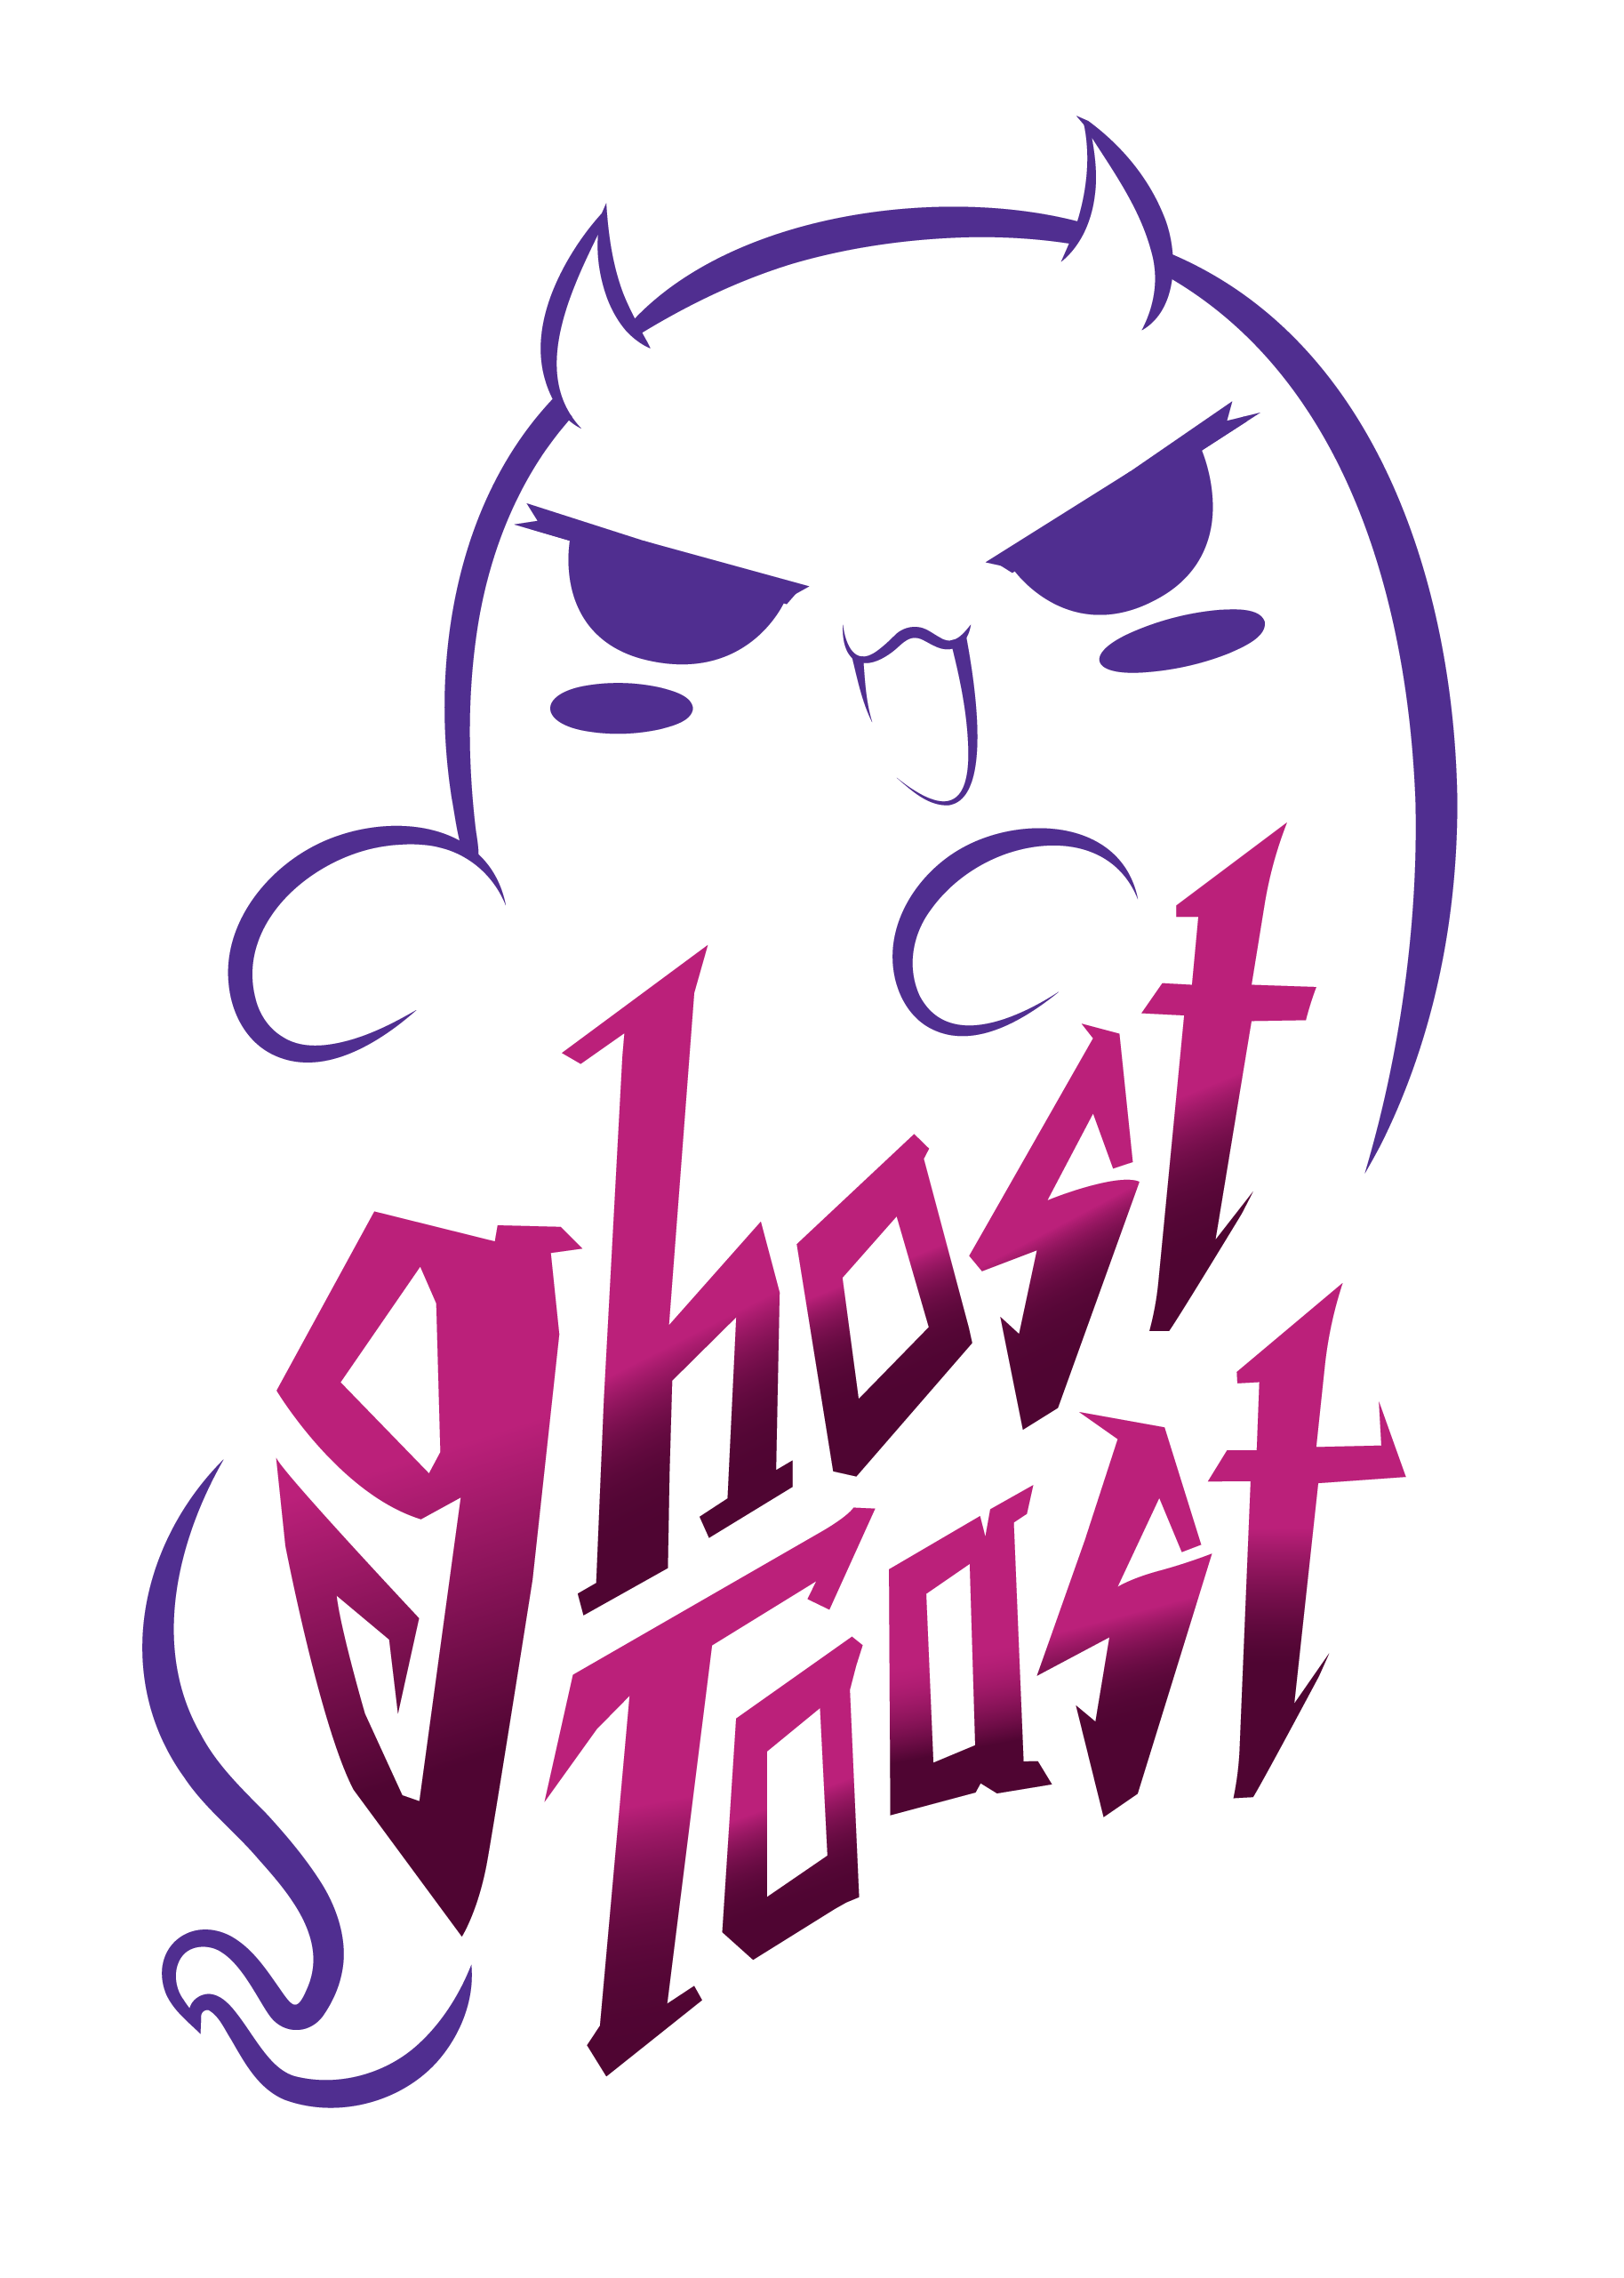 Ghost Toast